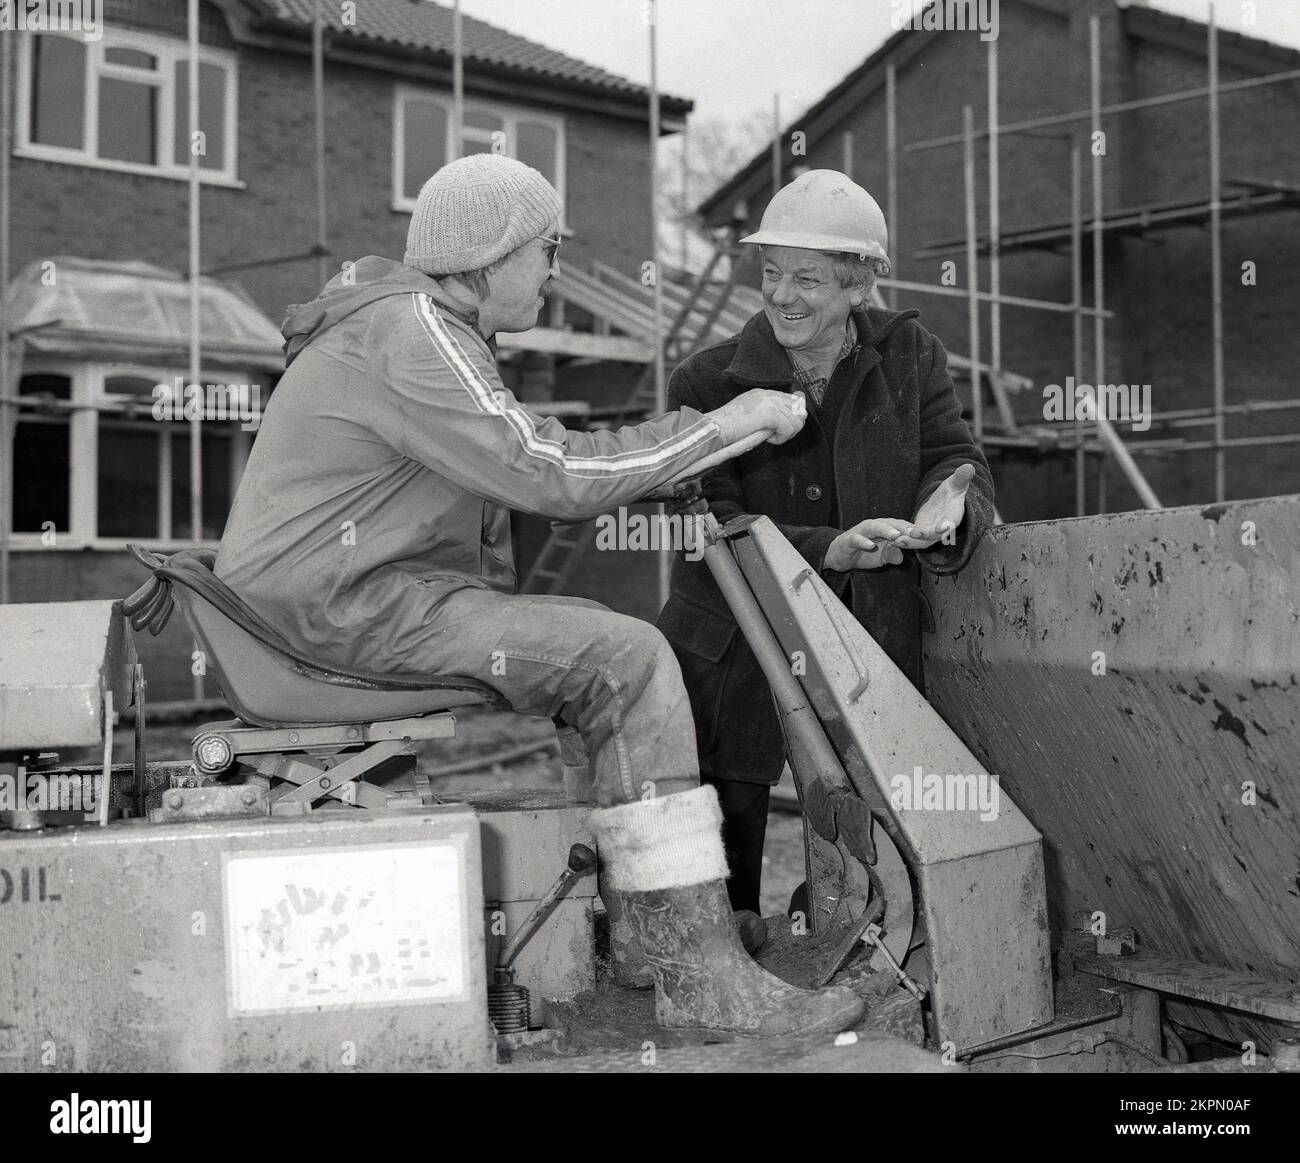 1980s, due costruttori in cantiere, in chat, uno seduto su un carrello di carico pesante, Inghilterra, Regno Unito. vuoi spostare un salto?? Foto Stock